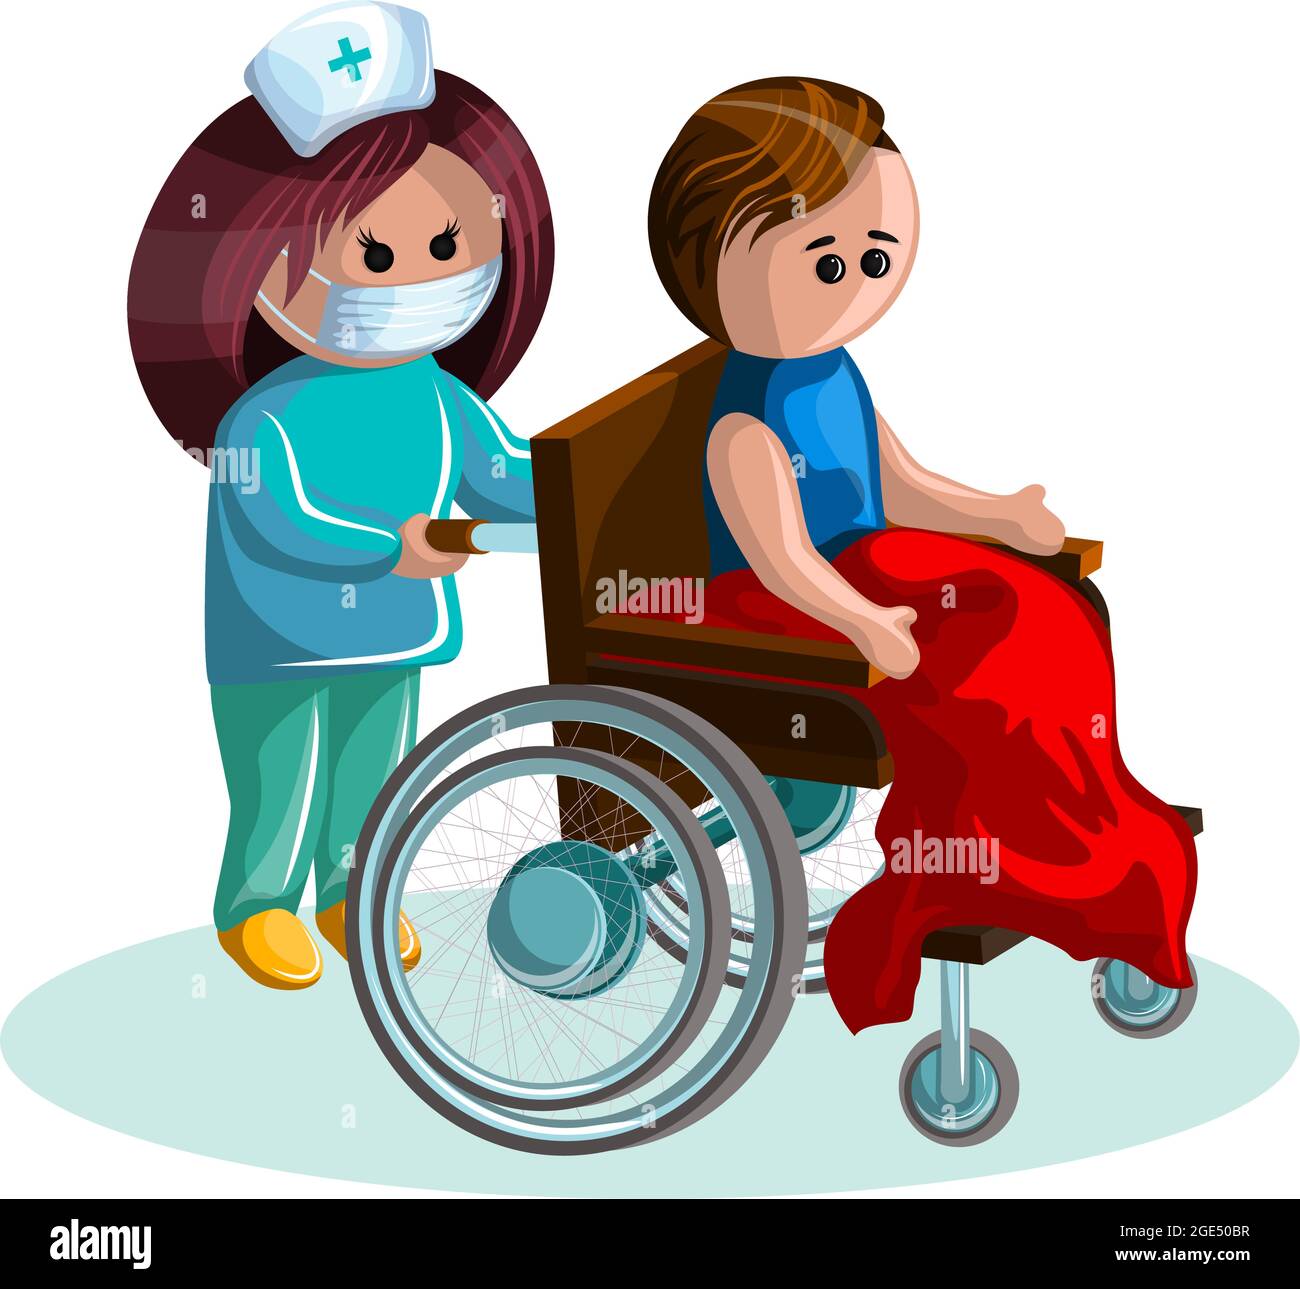 Immagine vettoriale di un giovane su una sedia a rotelle e di una donna che si prende cura di lui. EPS 10. Concetto. Immagine su sfondo bianco Illustrazione Vettoriale